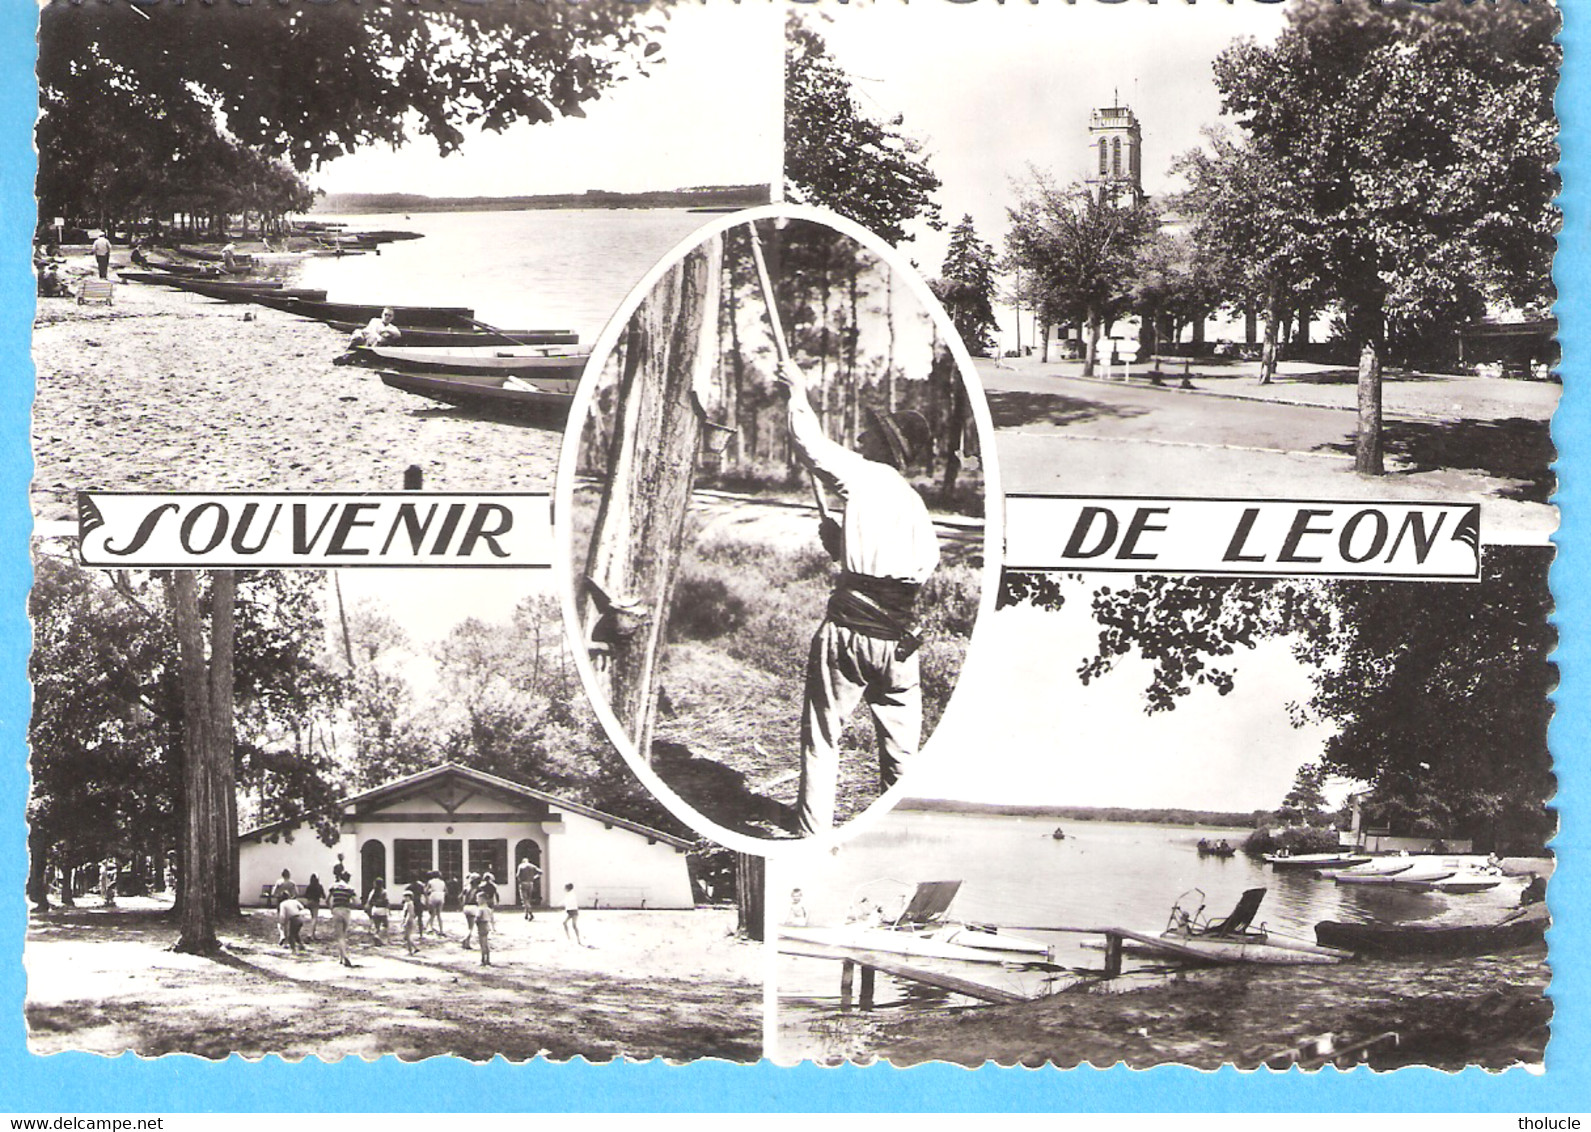 Léon (Castets-Landes)-1965-Multivues-Lac-Place De L'Eglise-Résinier-Camping-Pédalos (pédalo) - Castets